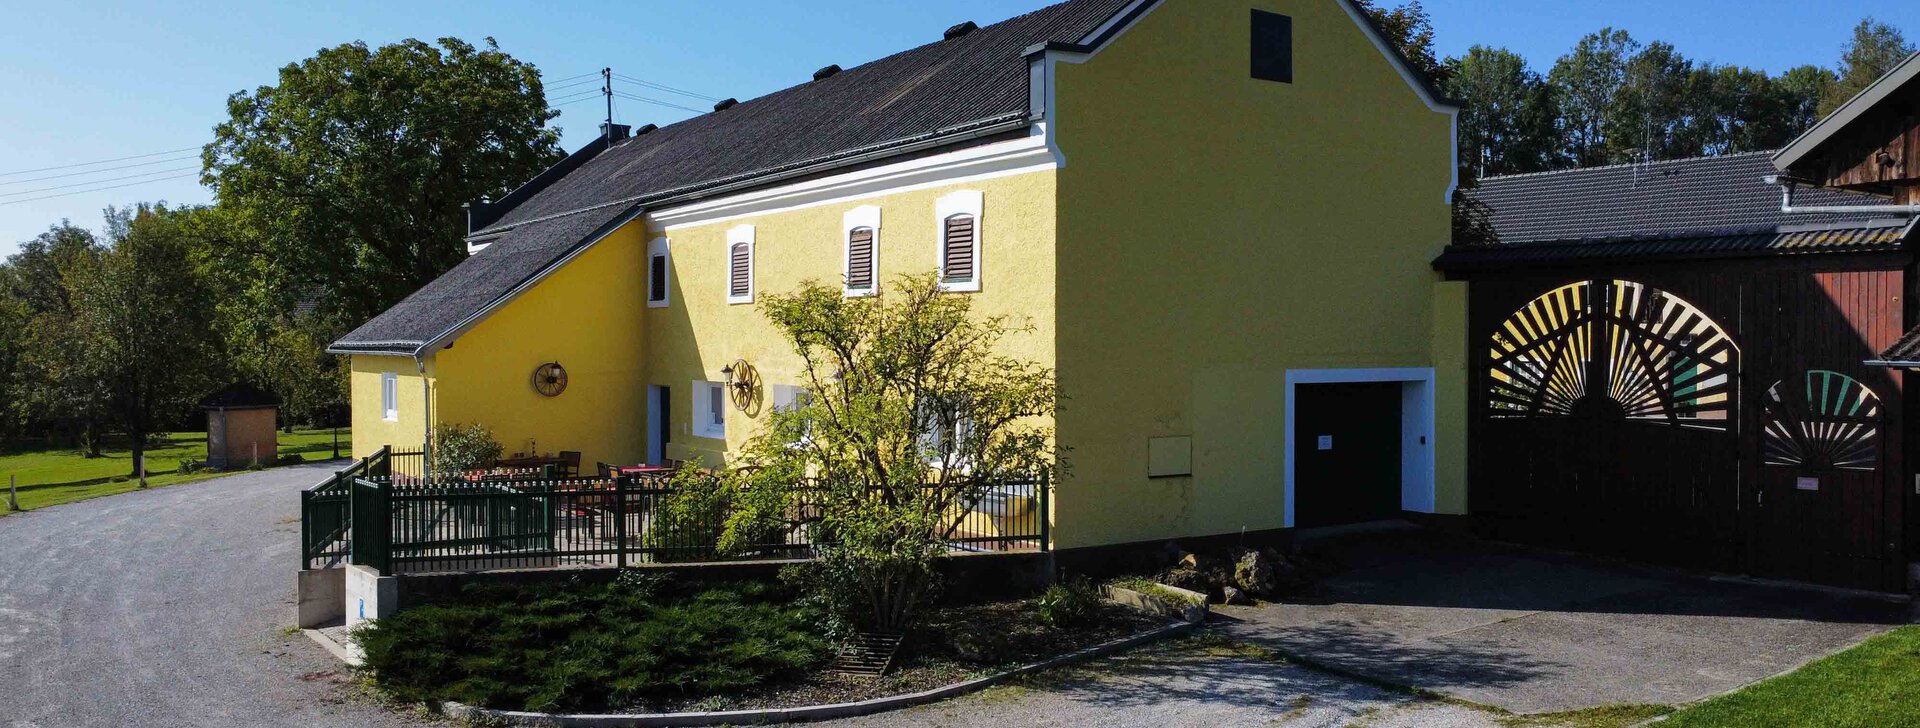 Bauernhaus, Immobilie kaufen, Vierseithof in Schalchen | © HausBauHaus GmbH